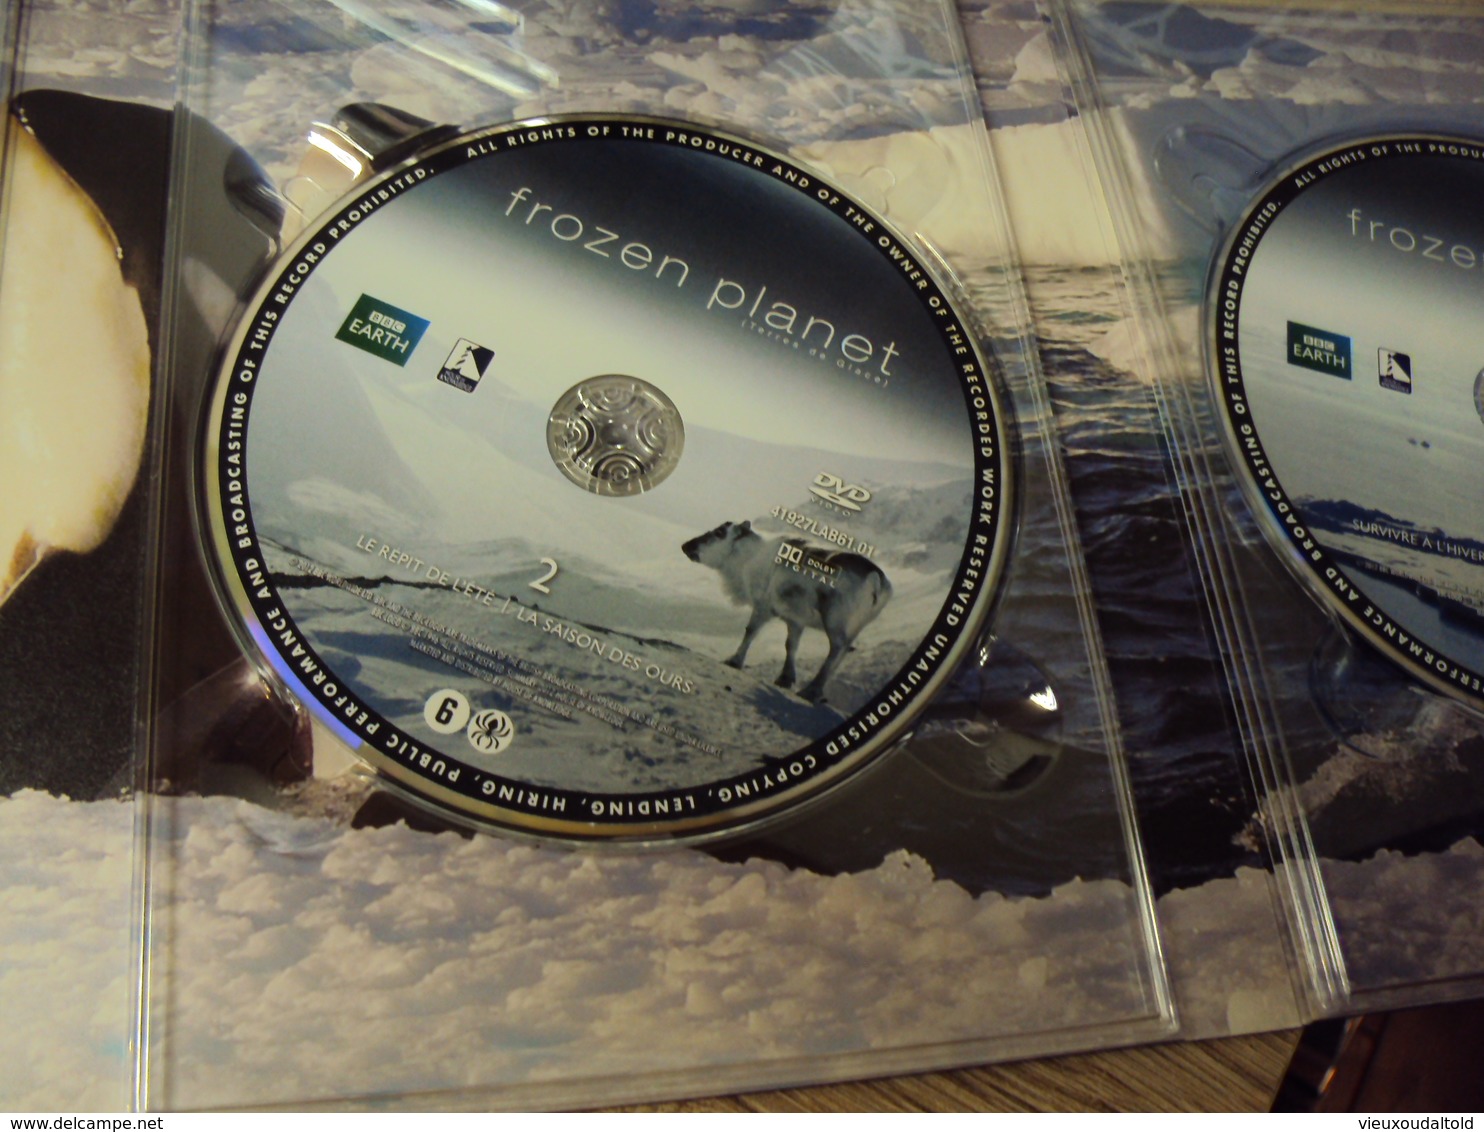 BOX 4 DVD    TERRES DE GLACE  (Frozen planet) la série complète  (BBC EARTH)